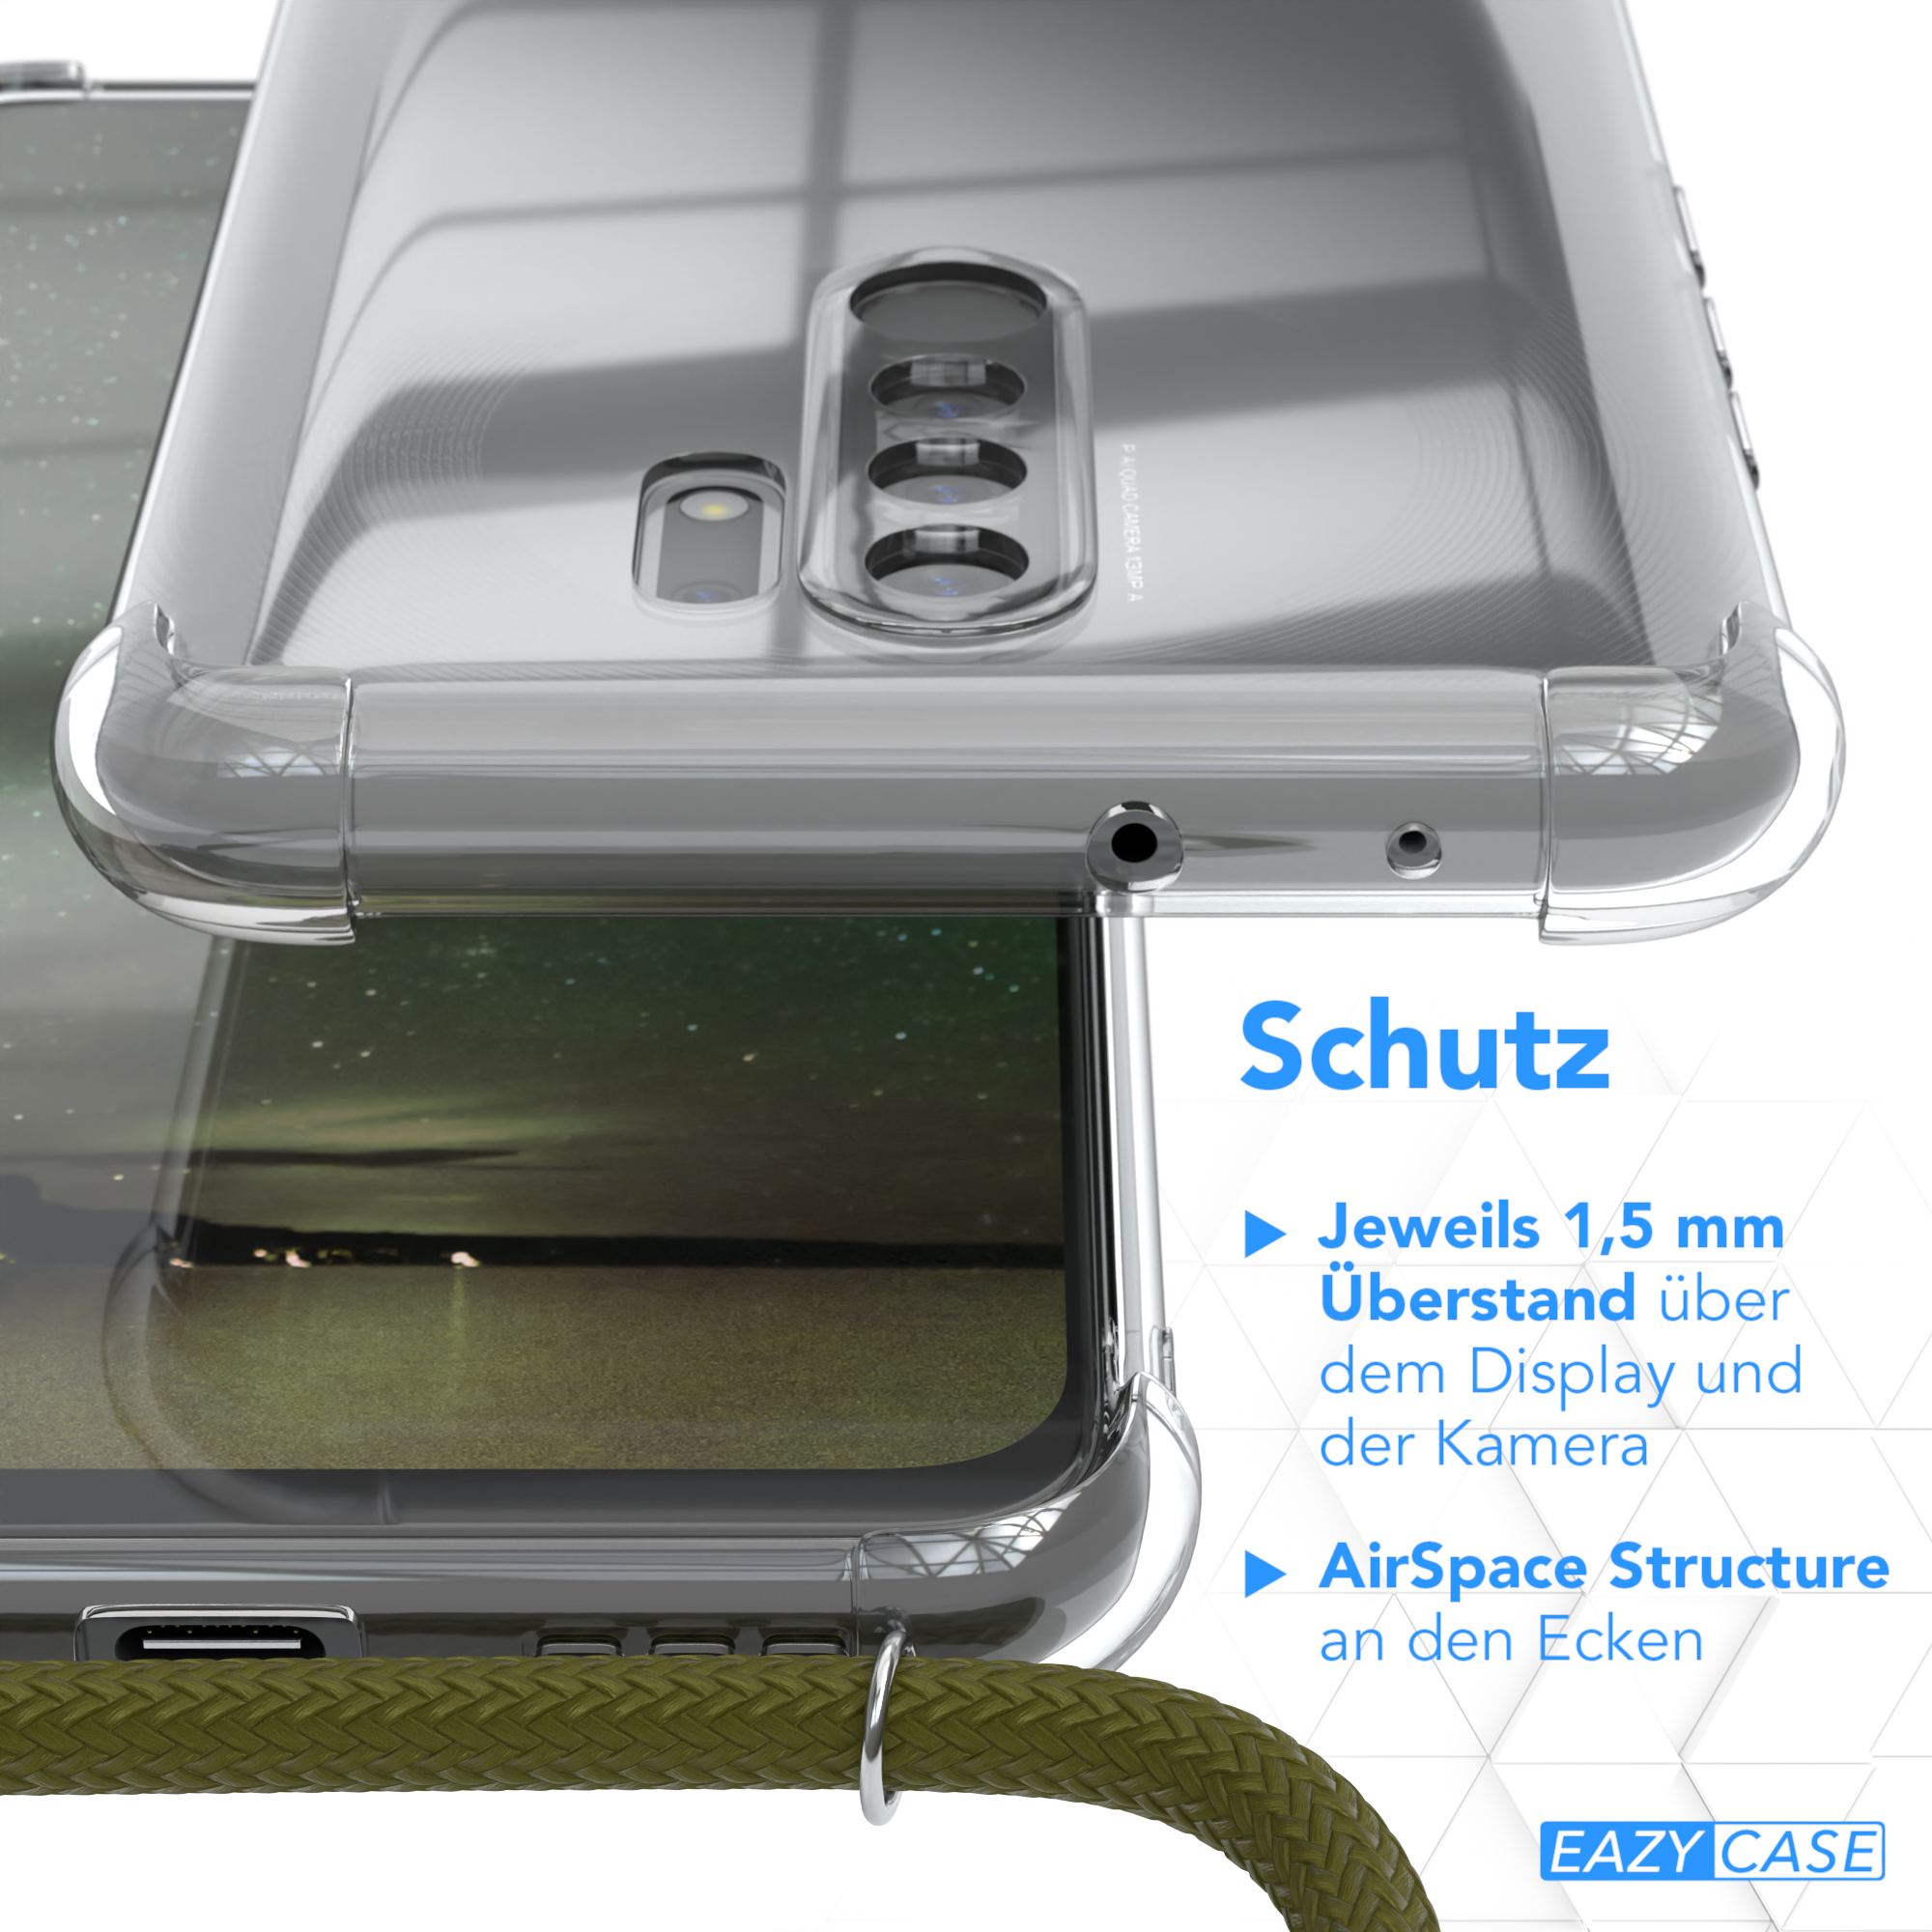 EAZY CASE Clear Cover mit Umhängetasche, Xiaomi, Redmi Prime, Olive Umhängeband, Grün 9 / Redmi 9